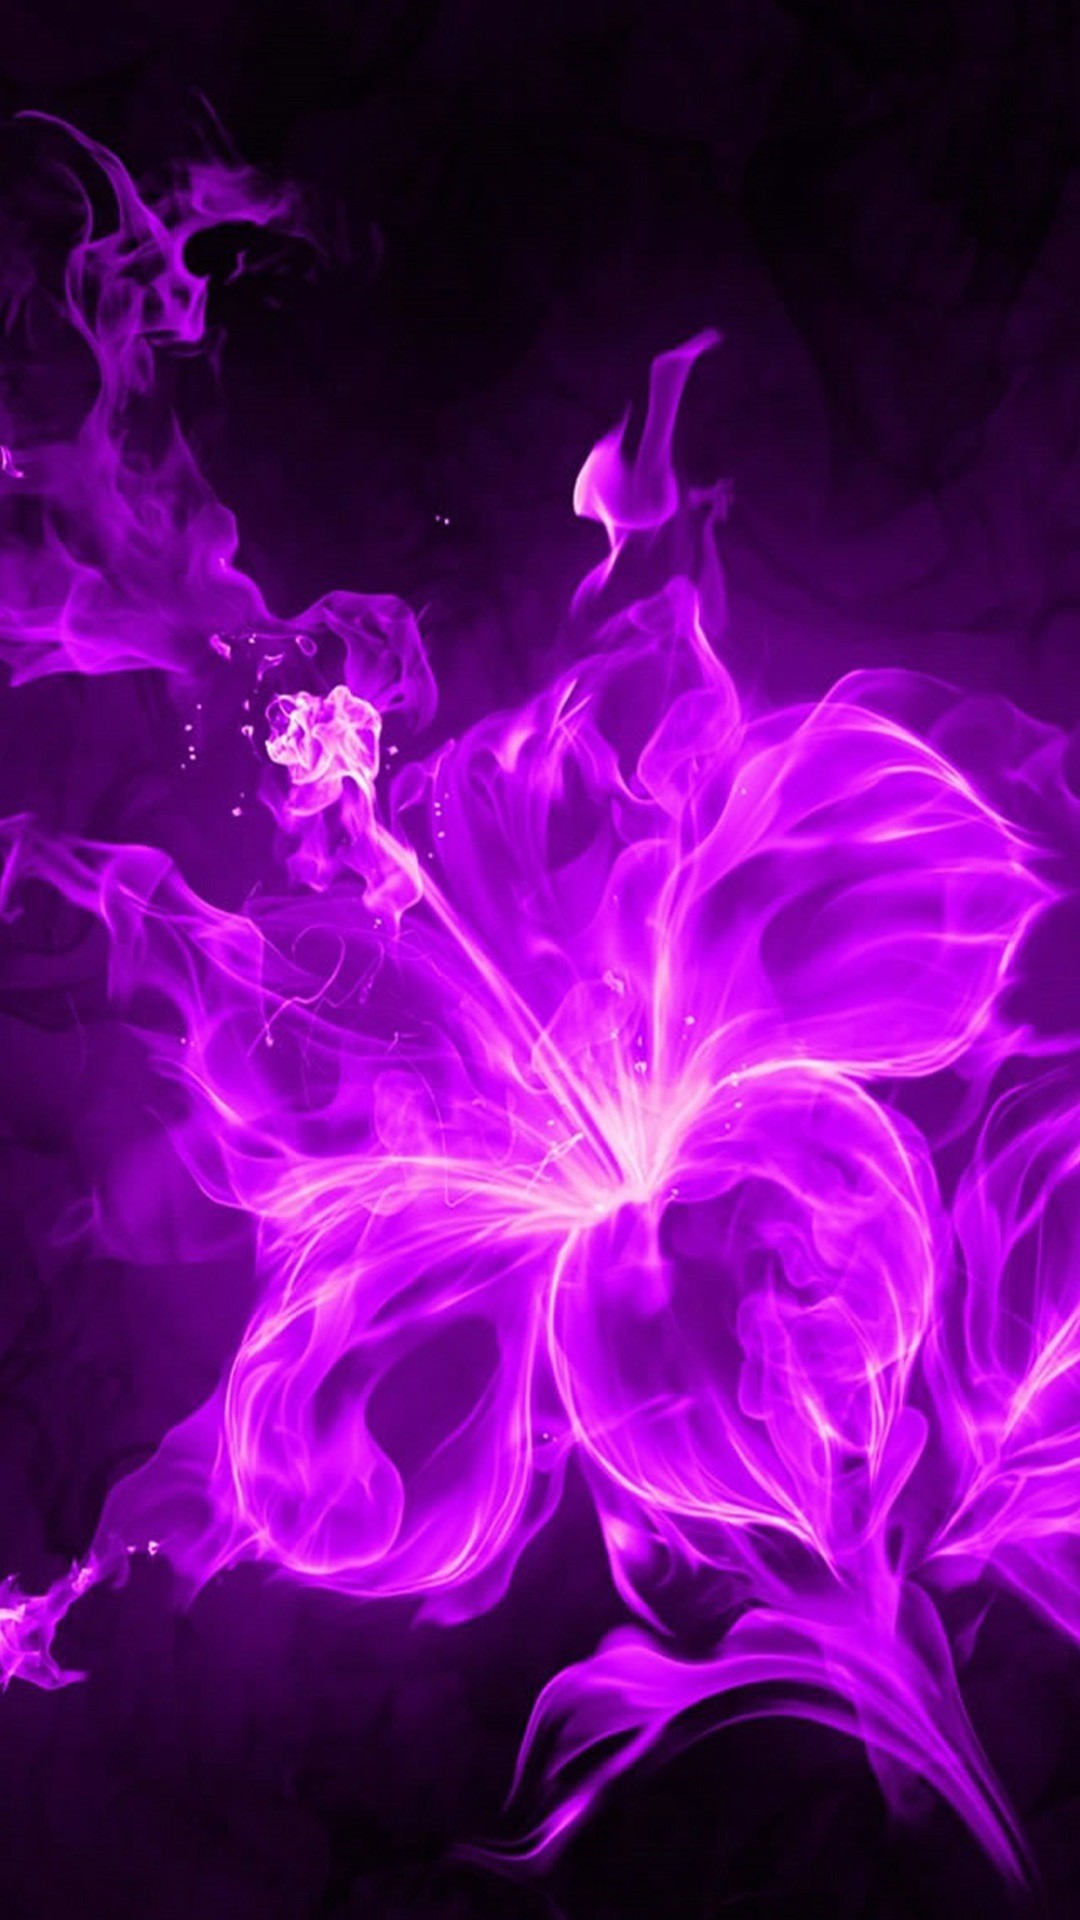 3D Purple Flower iPhone Wallpaper resolution 1080x1920